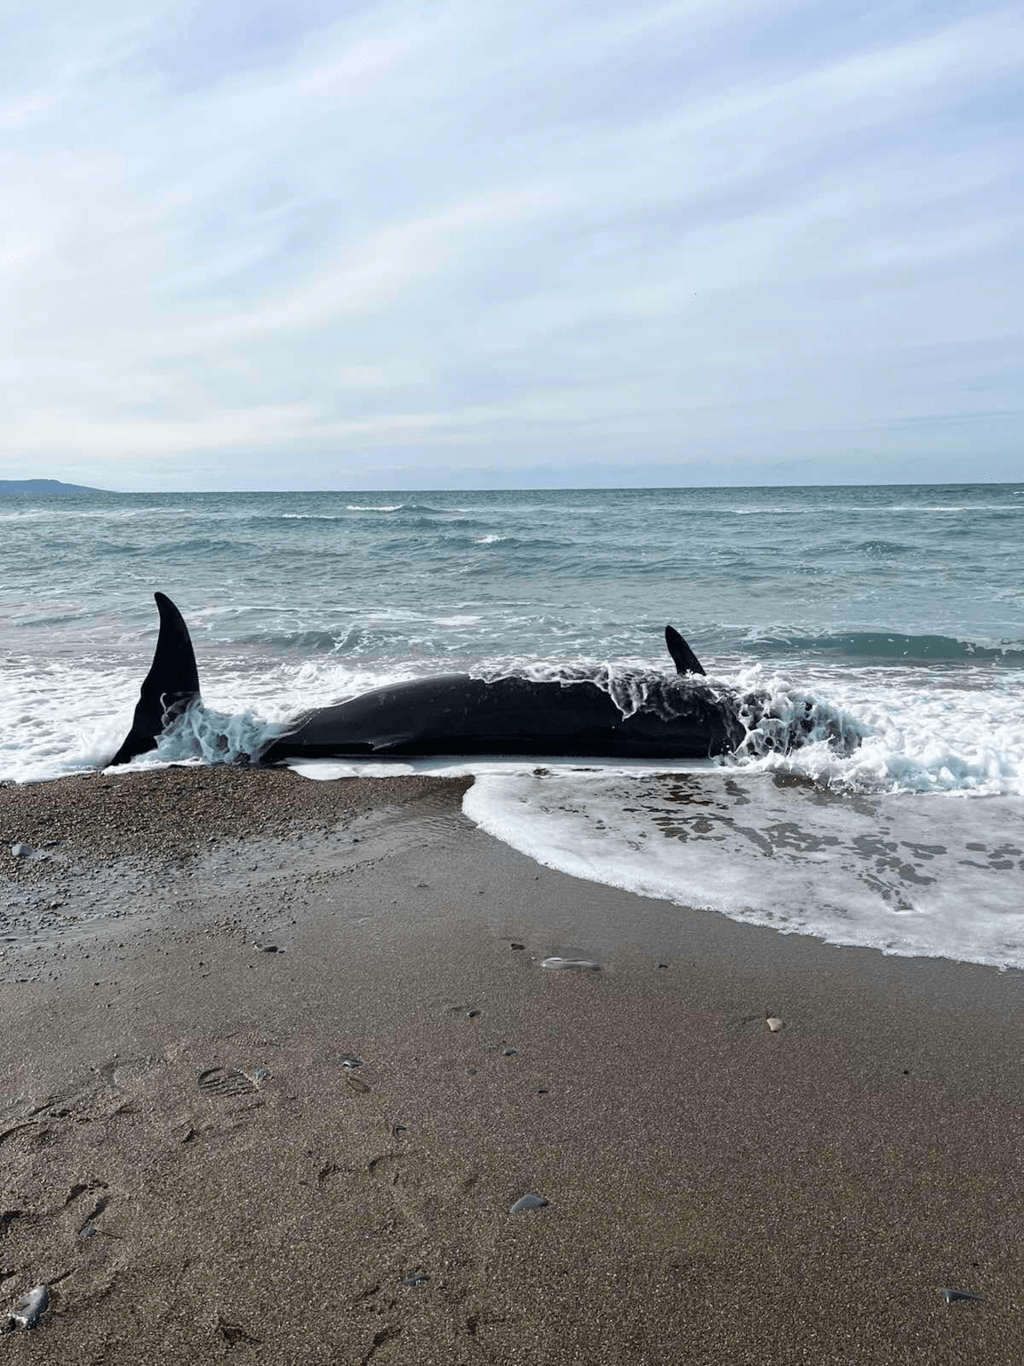 这些鲸鱼是在塞浦路斯北部海岸相对较隐密区域发现的。